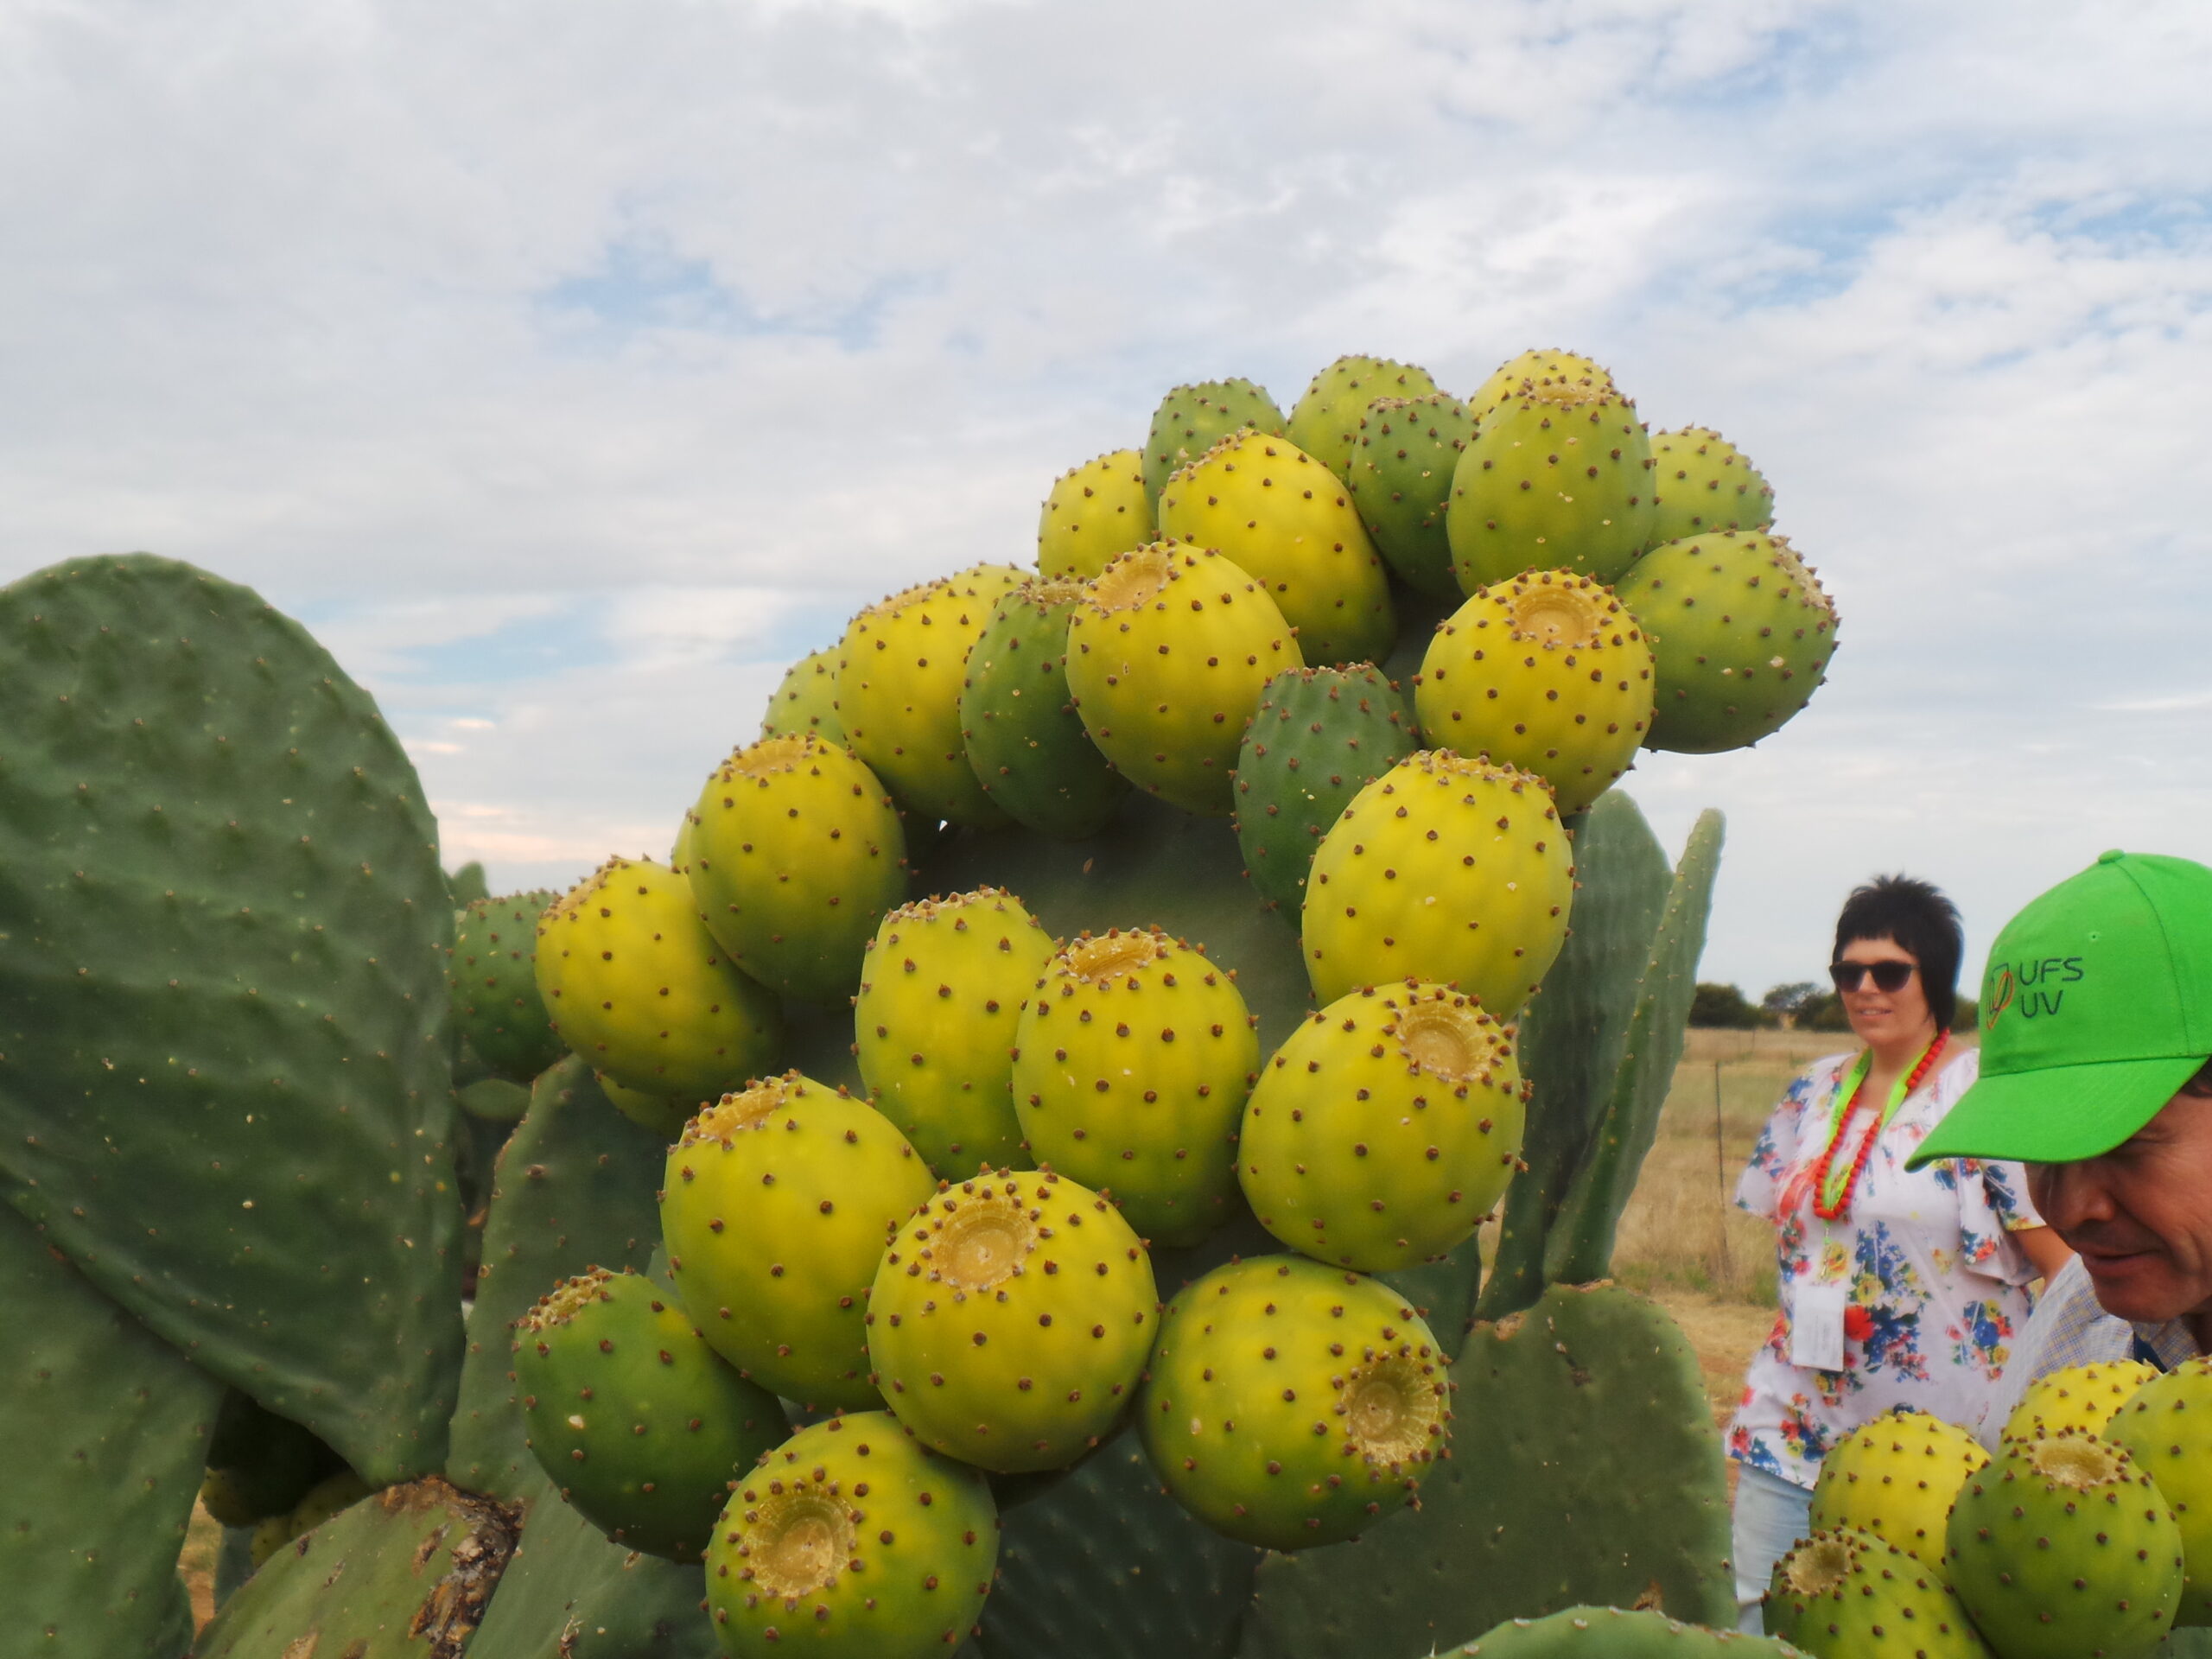 cactus-field-visit-during-international-cactus-pear-workshop-held-in-bloemfontein-south-africa-2